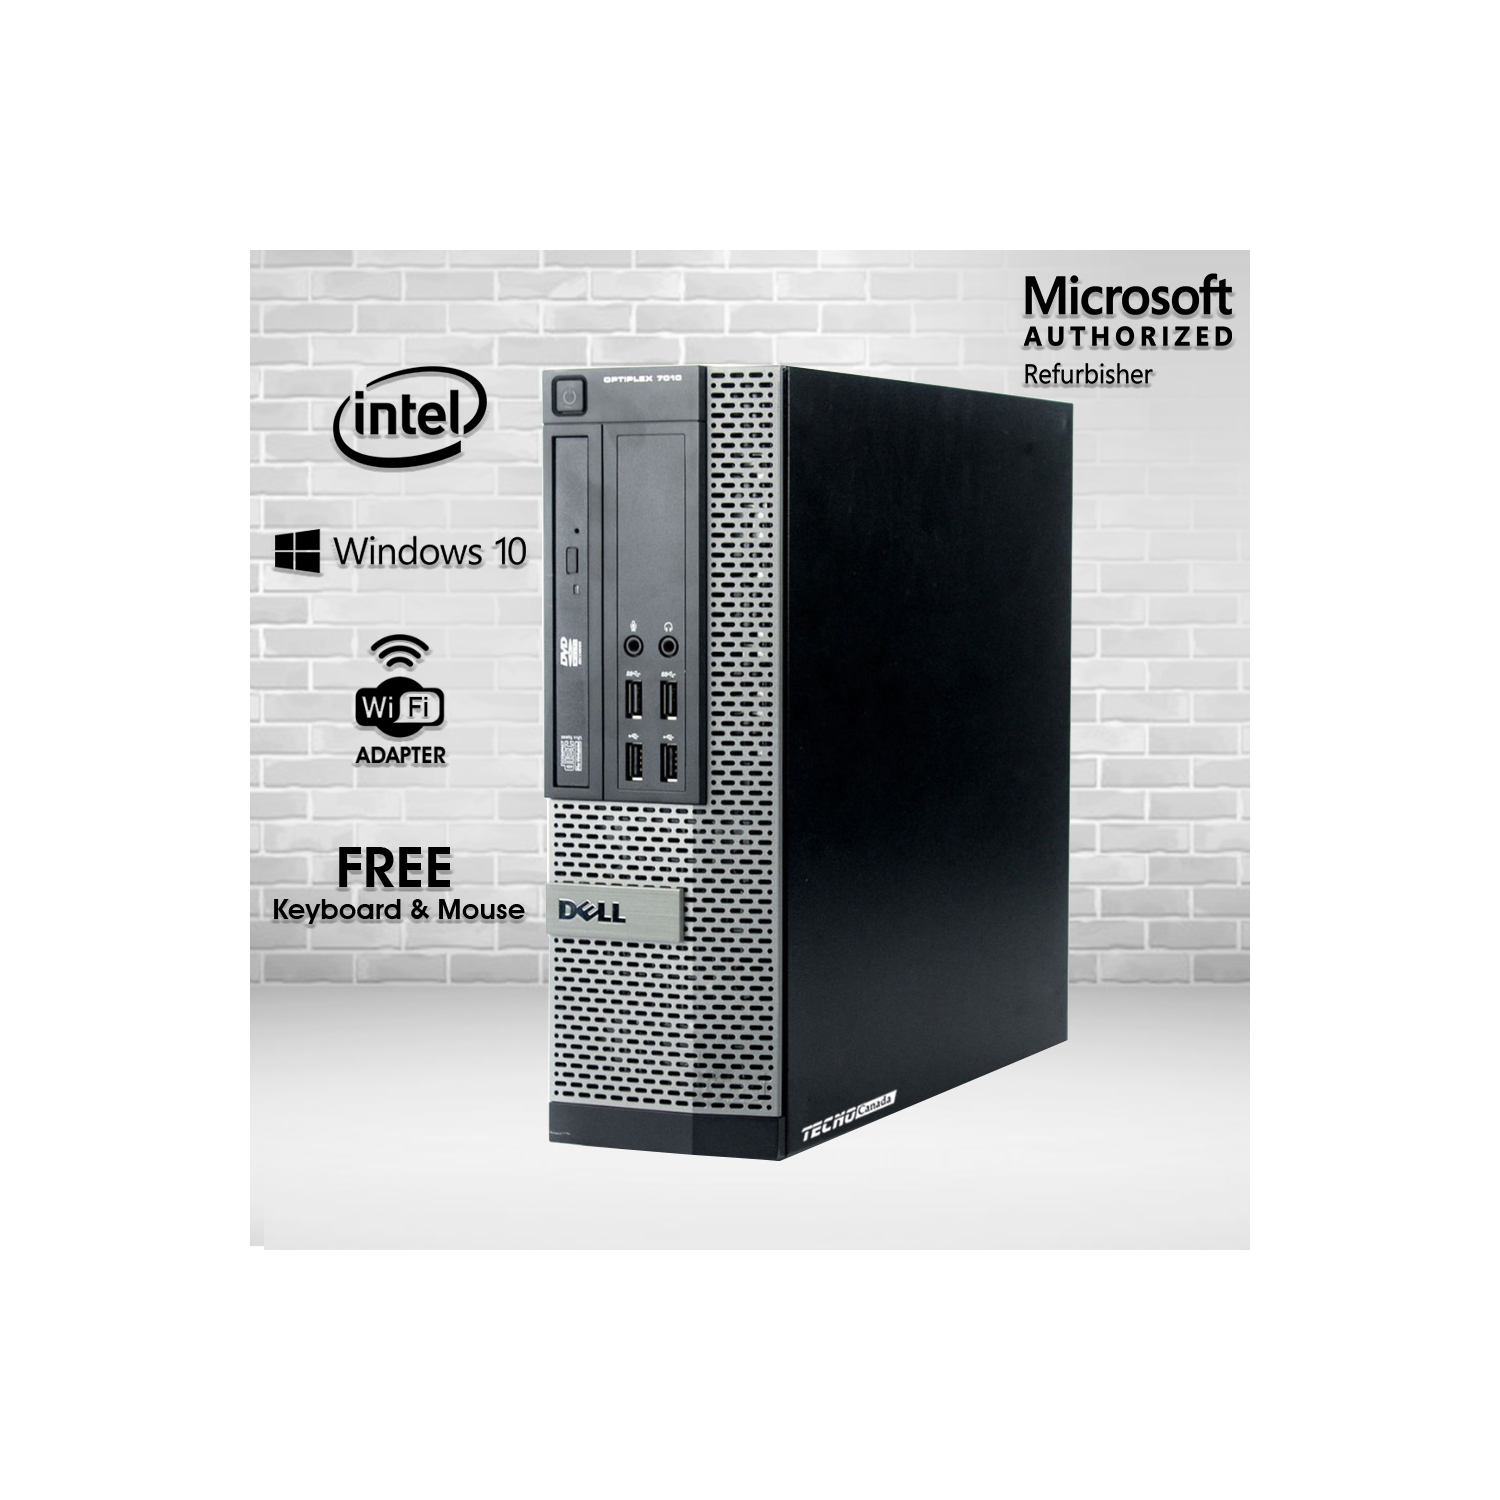 Refurbished (Good) - Dell OptiPlex 7010 SFF Desktop Computer - Intel Core i7-3770, 16GB RAM, New 480GB SSD, Windows 10 Home